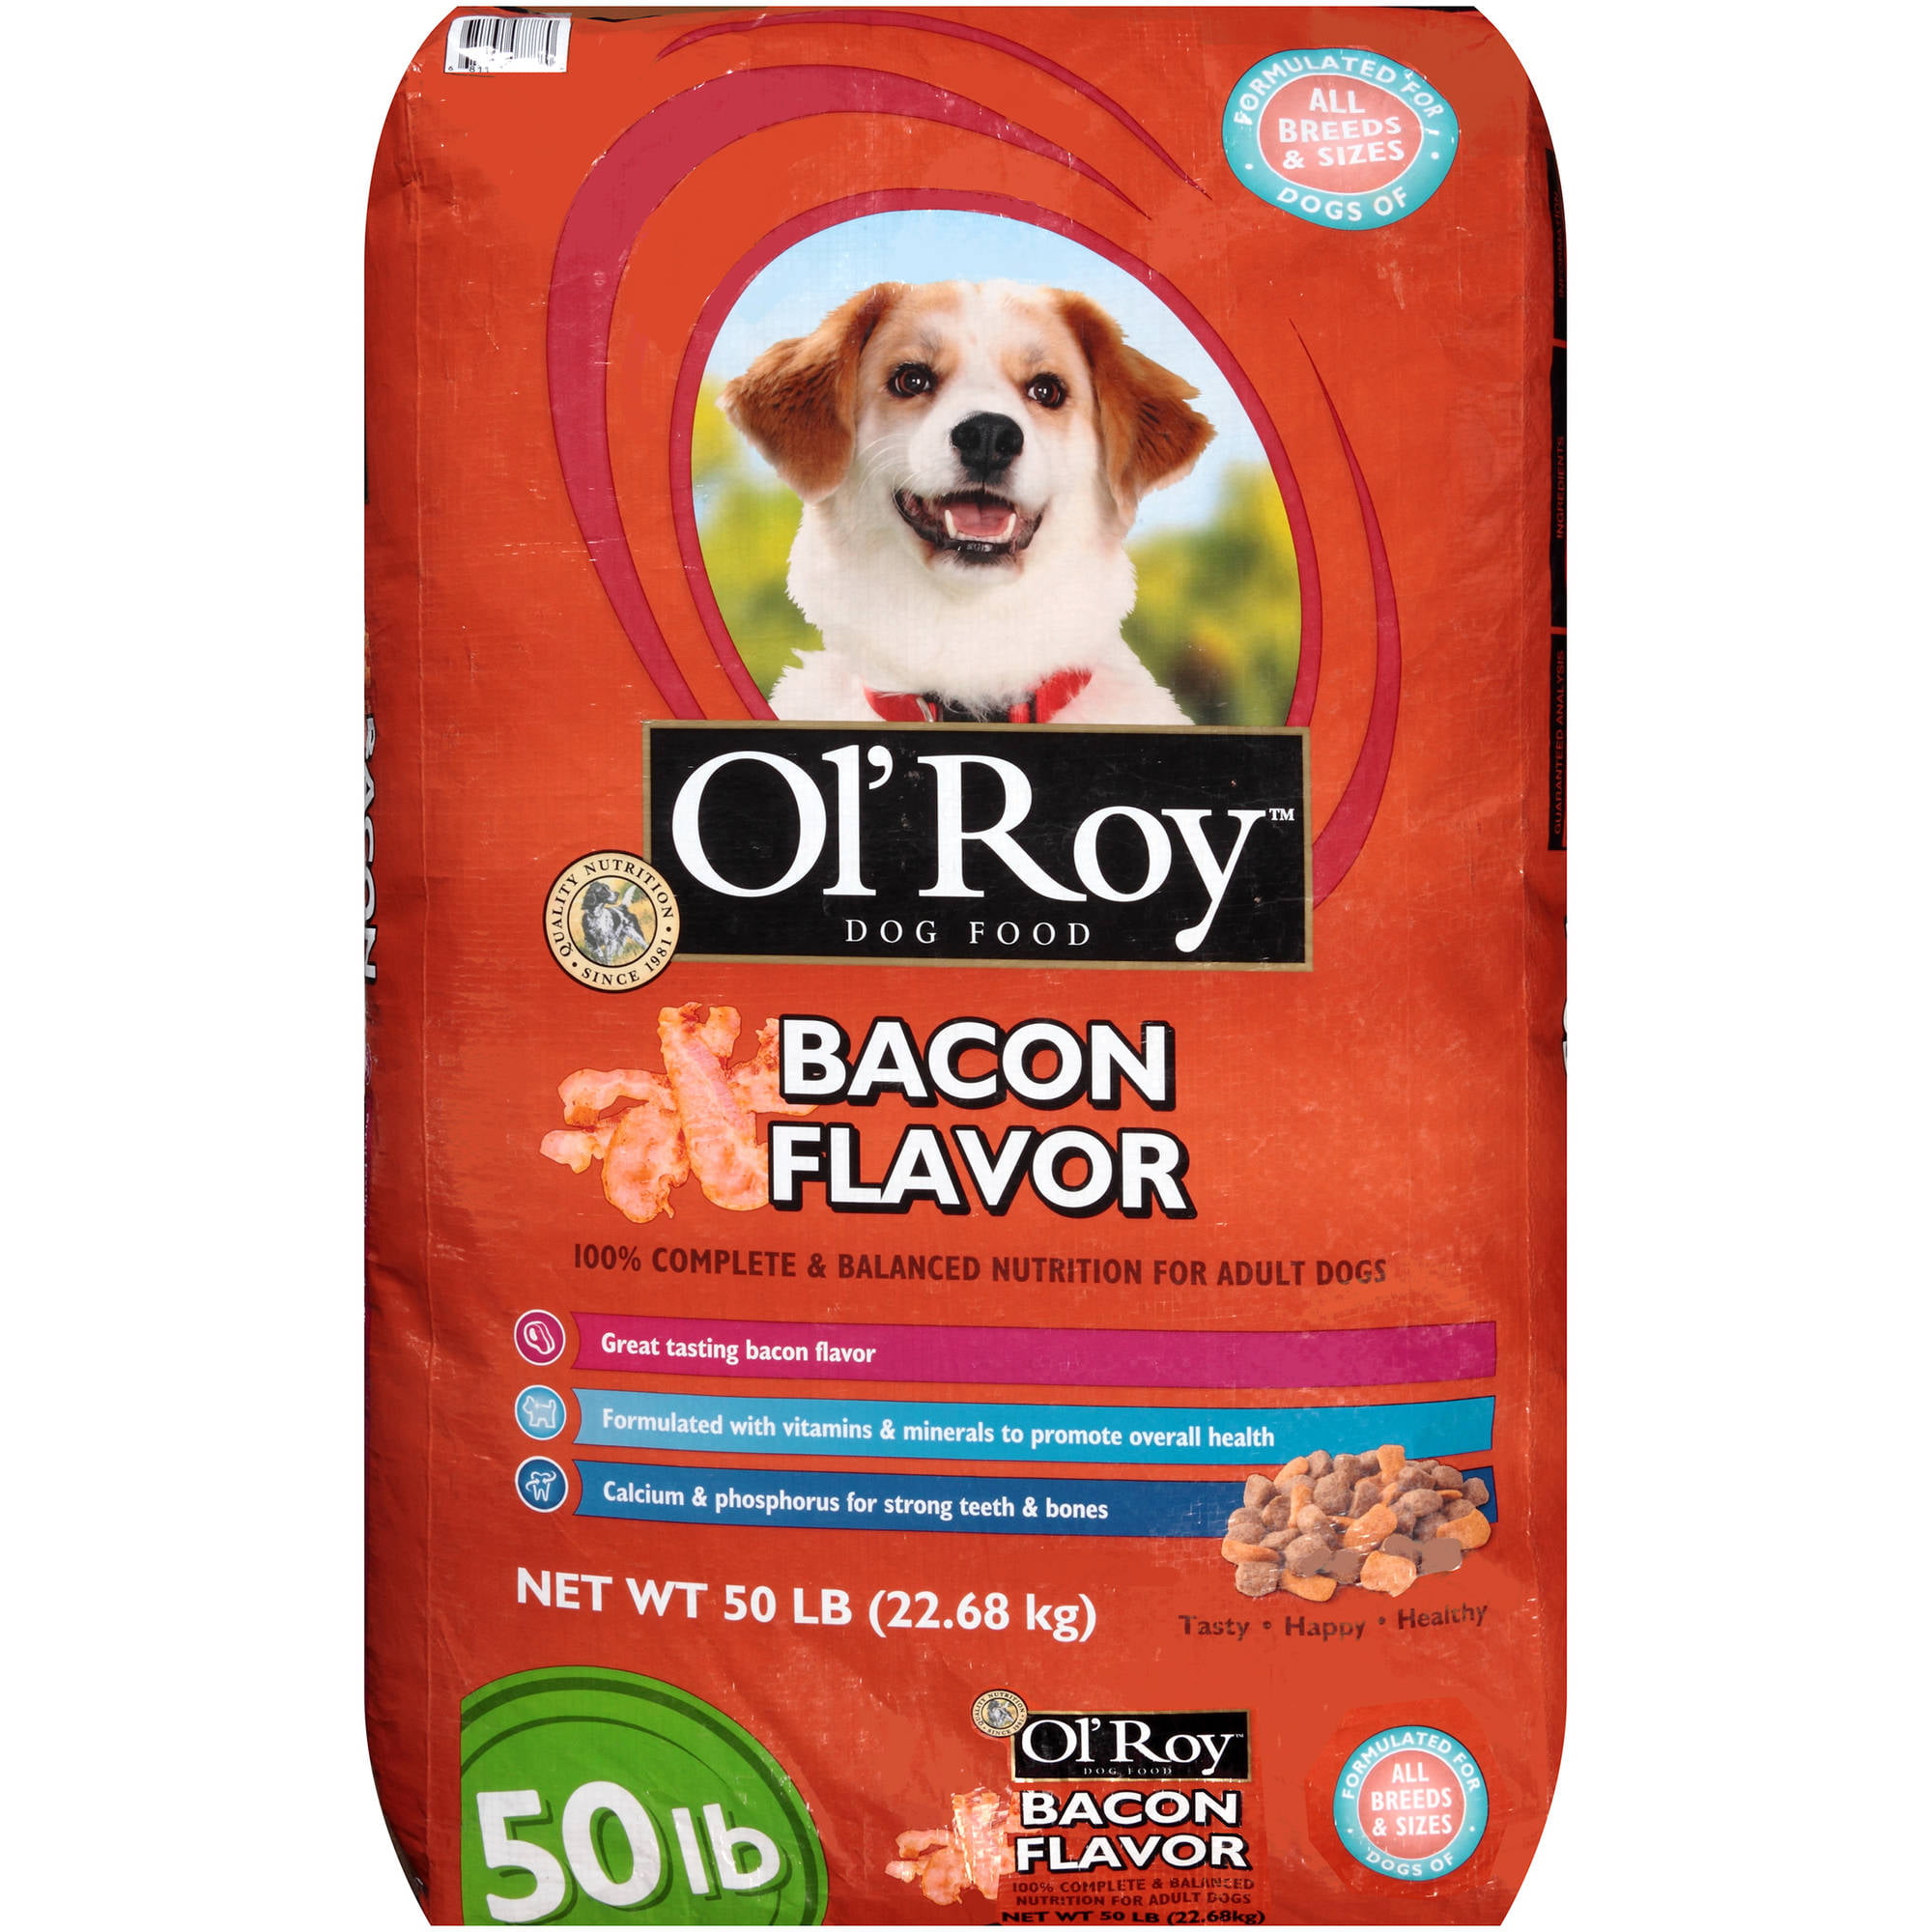 walmart ol roy dog food recall 2019